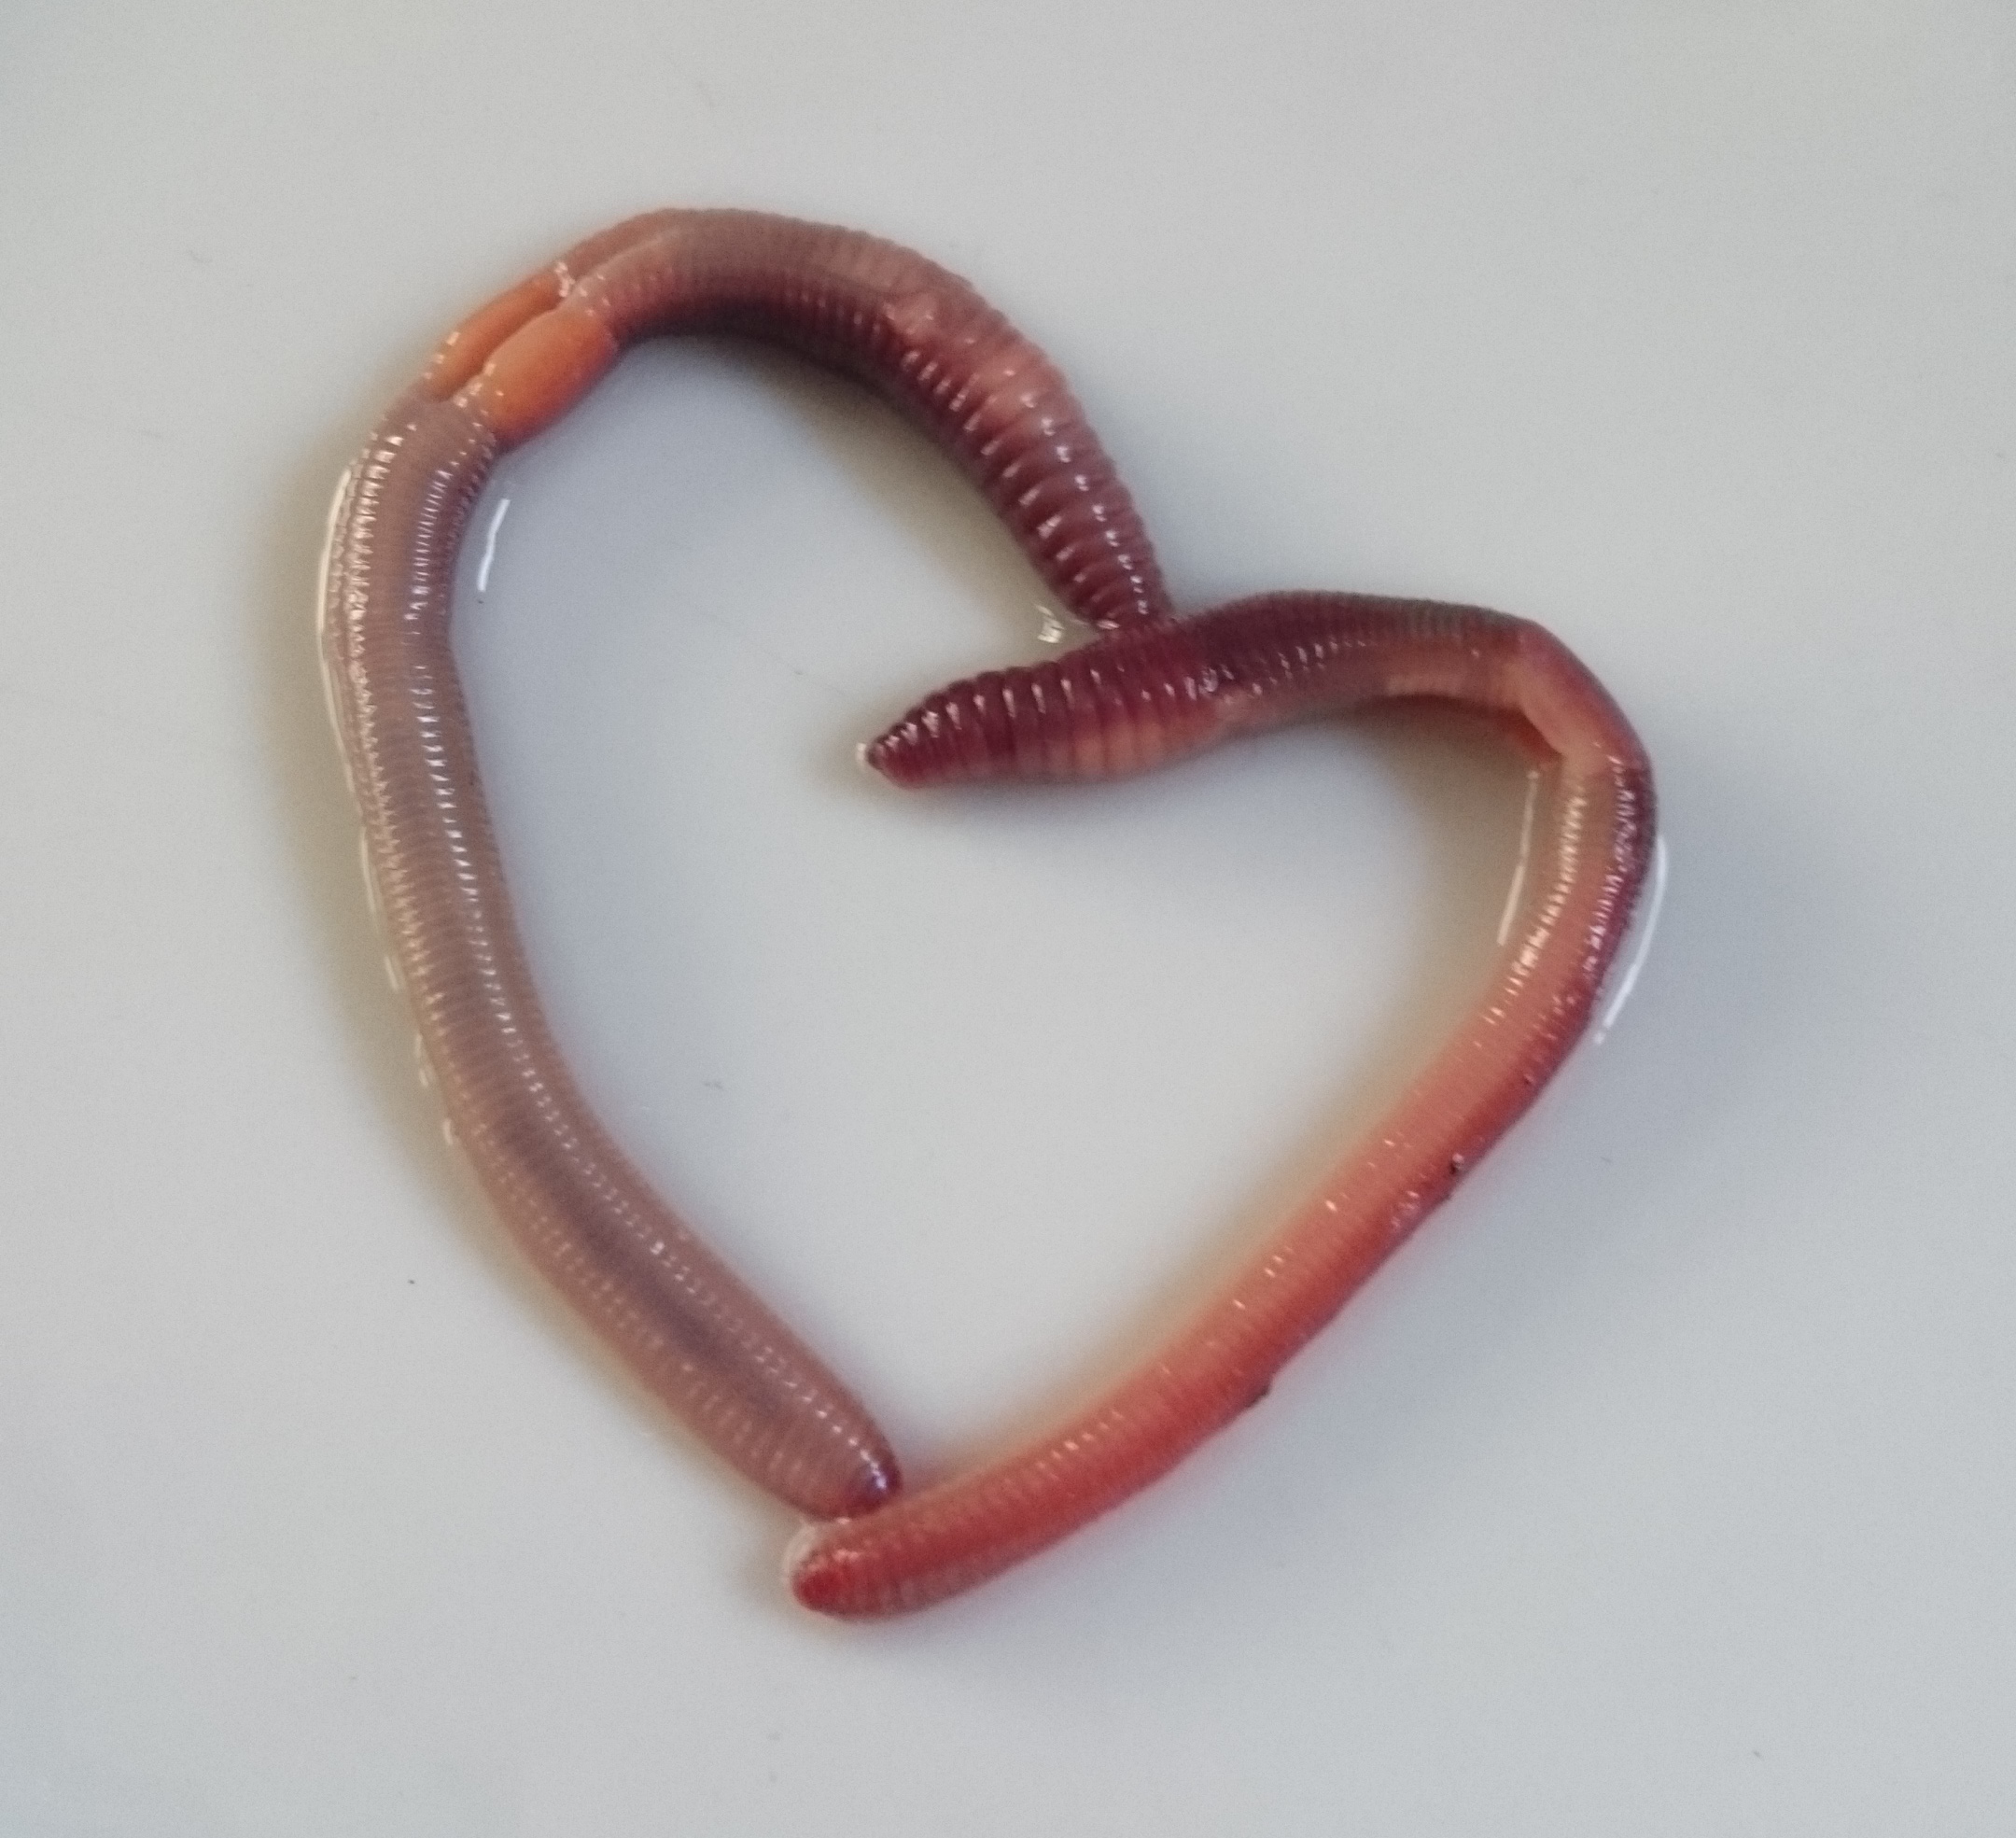 the-amorous-earthworms-earthworm-watch